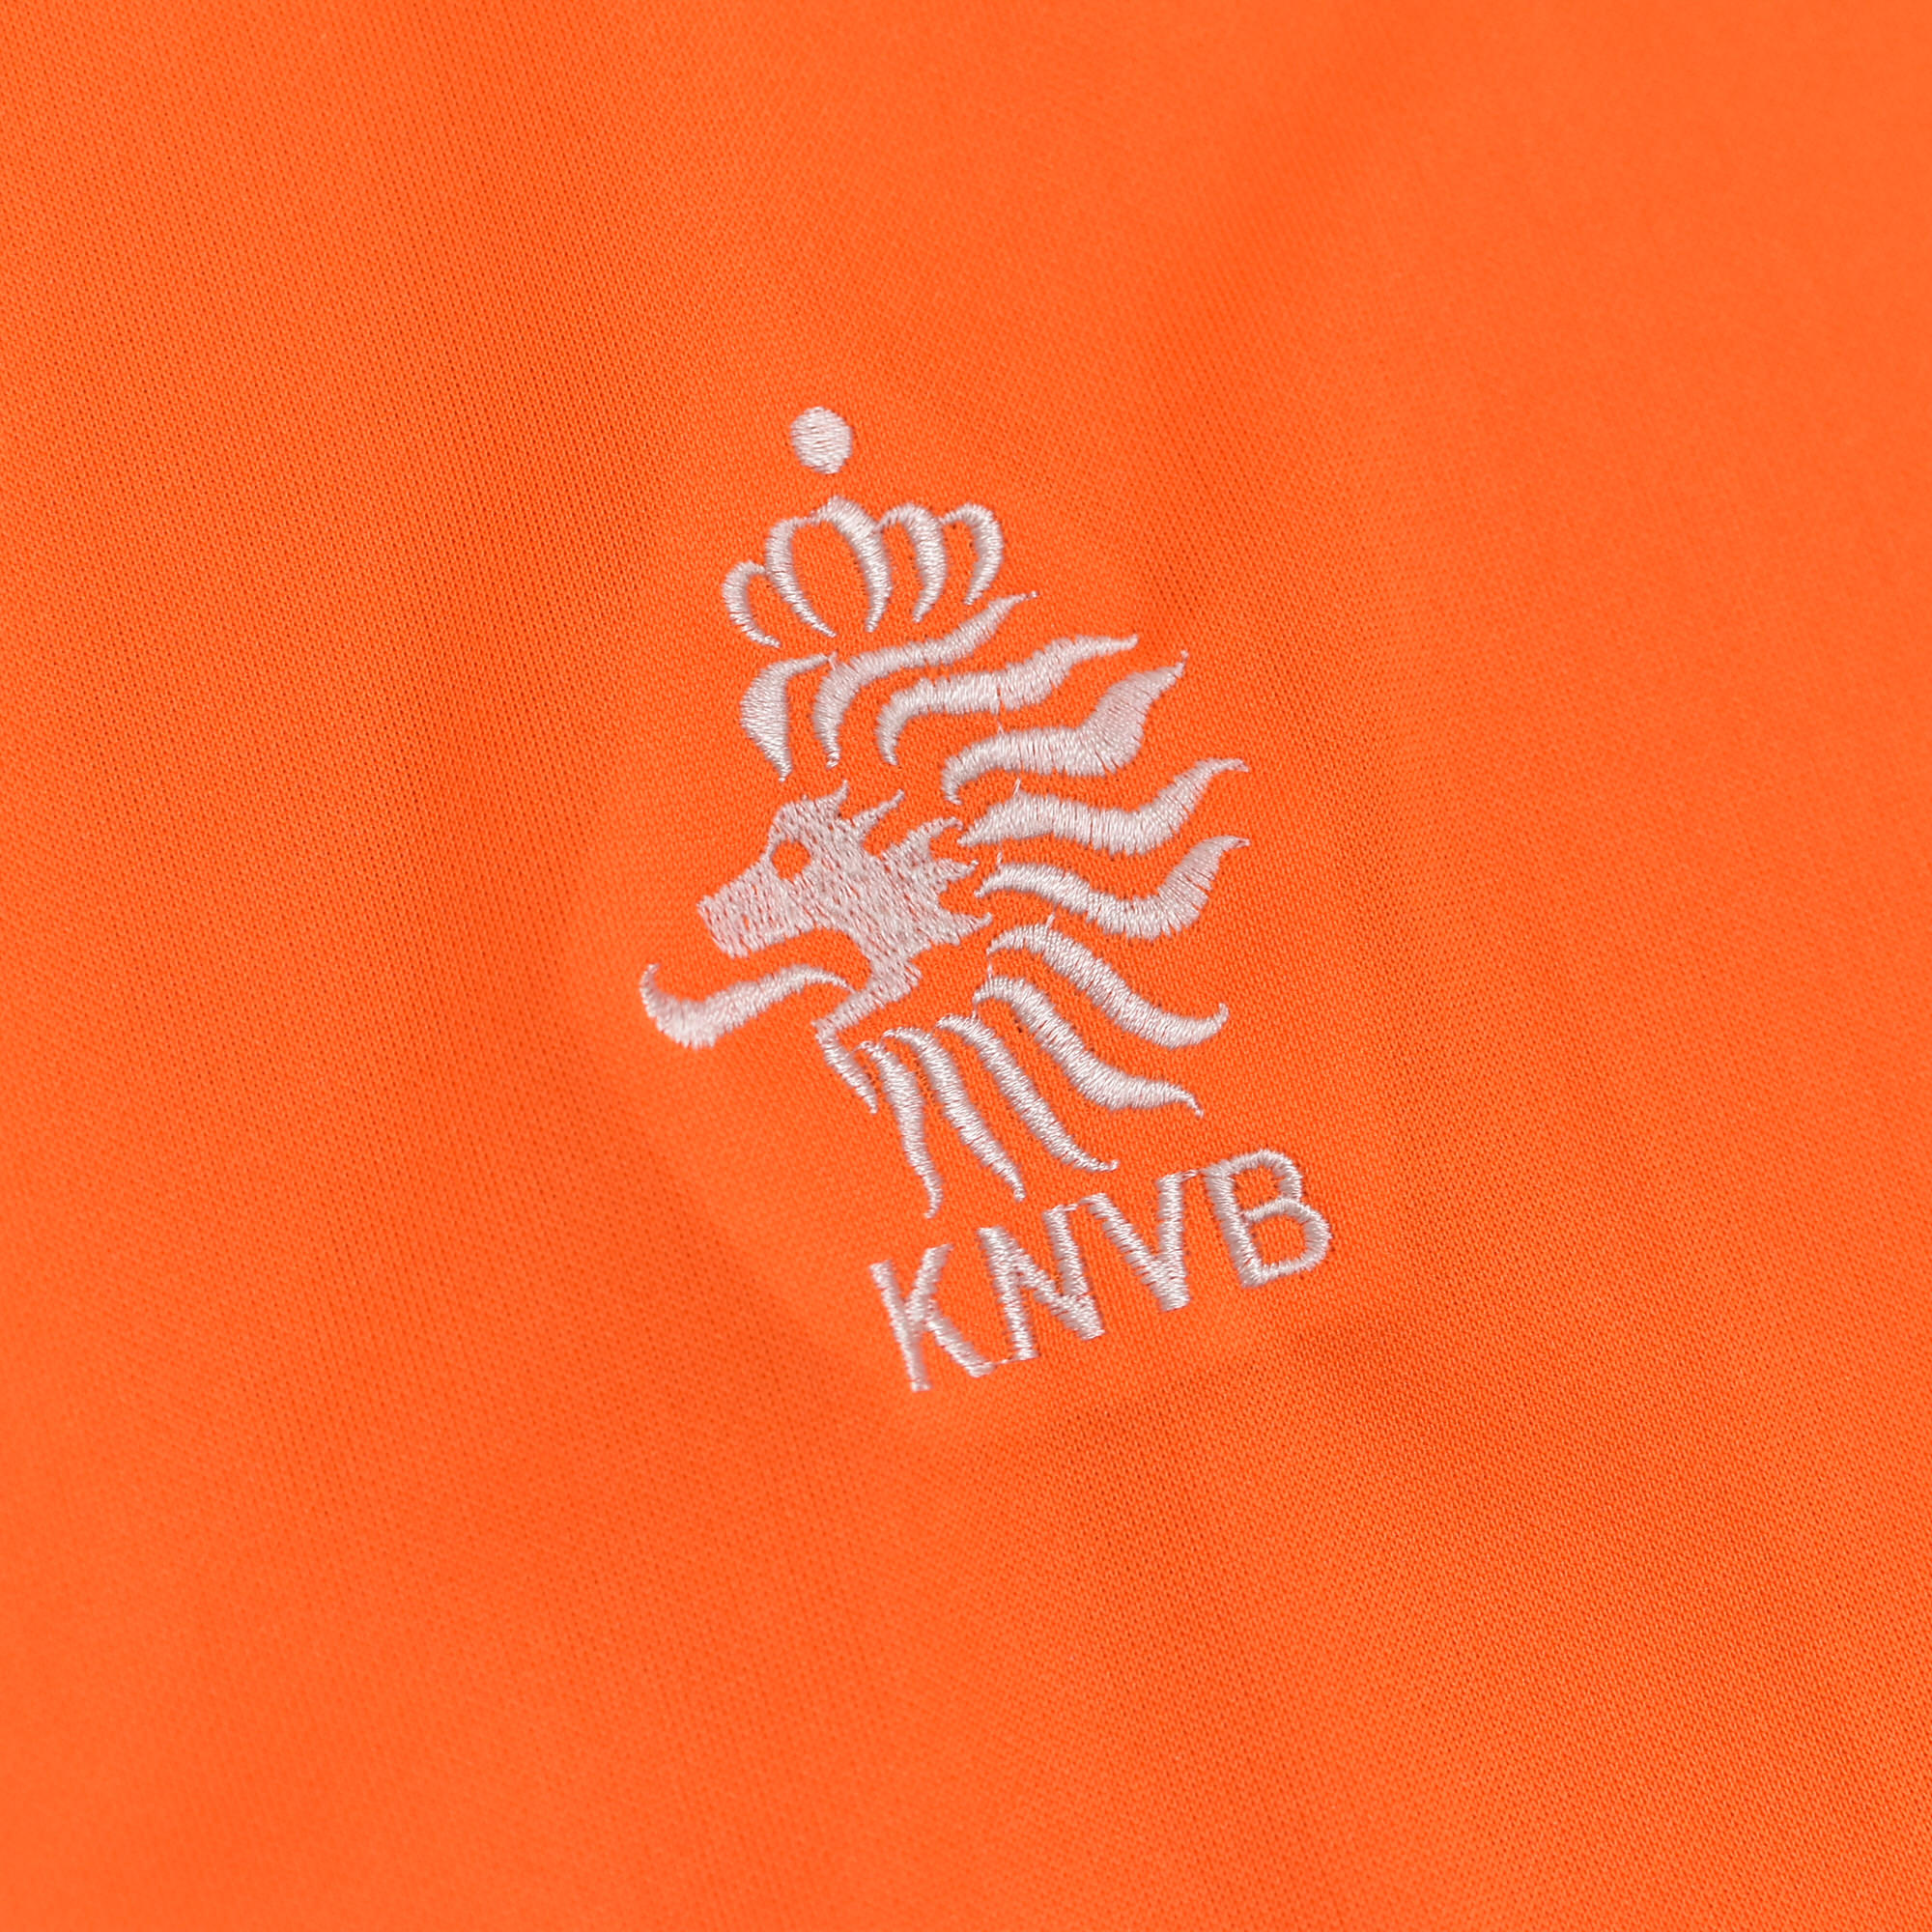 メンズ L相当 KNBL オランダ オランイェ サッカー協会 ロゴ刺繍